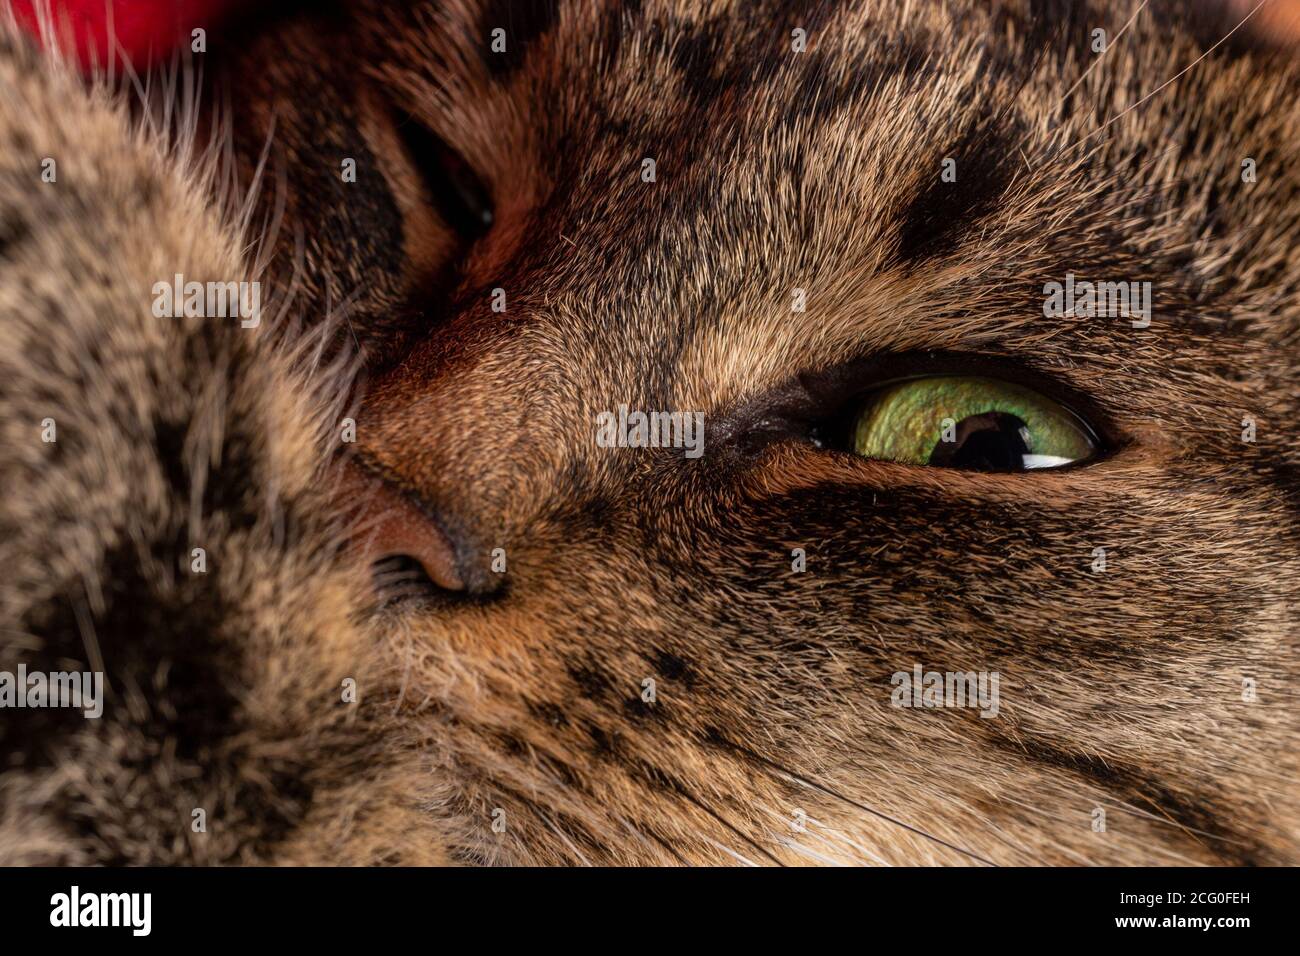 Inländische tabby Katze Gesicht Nahaufnahme mit selektivem Fokus Stockfoto